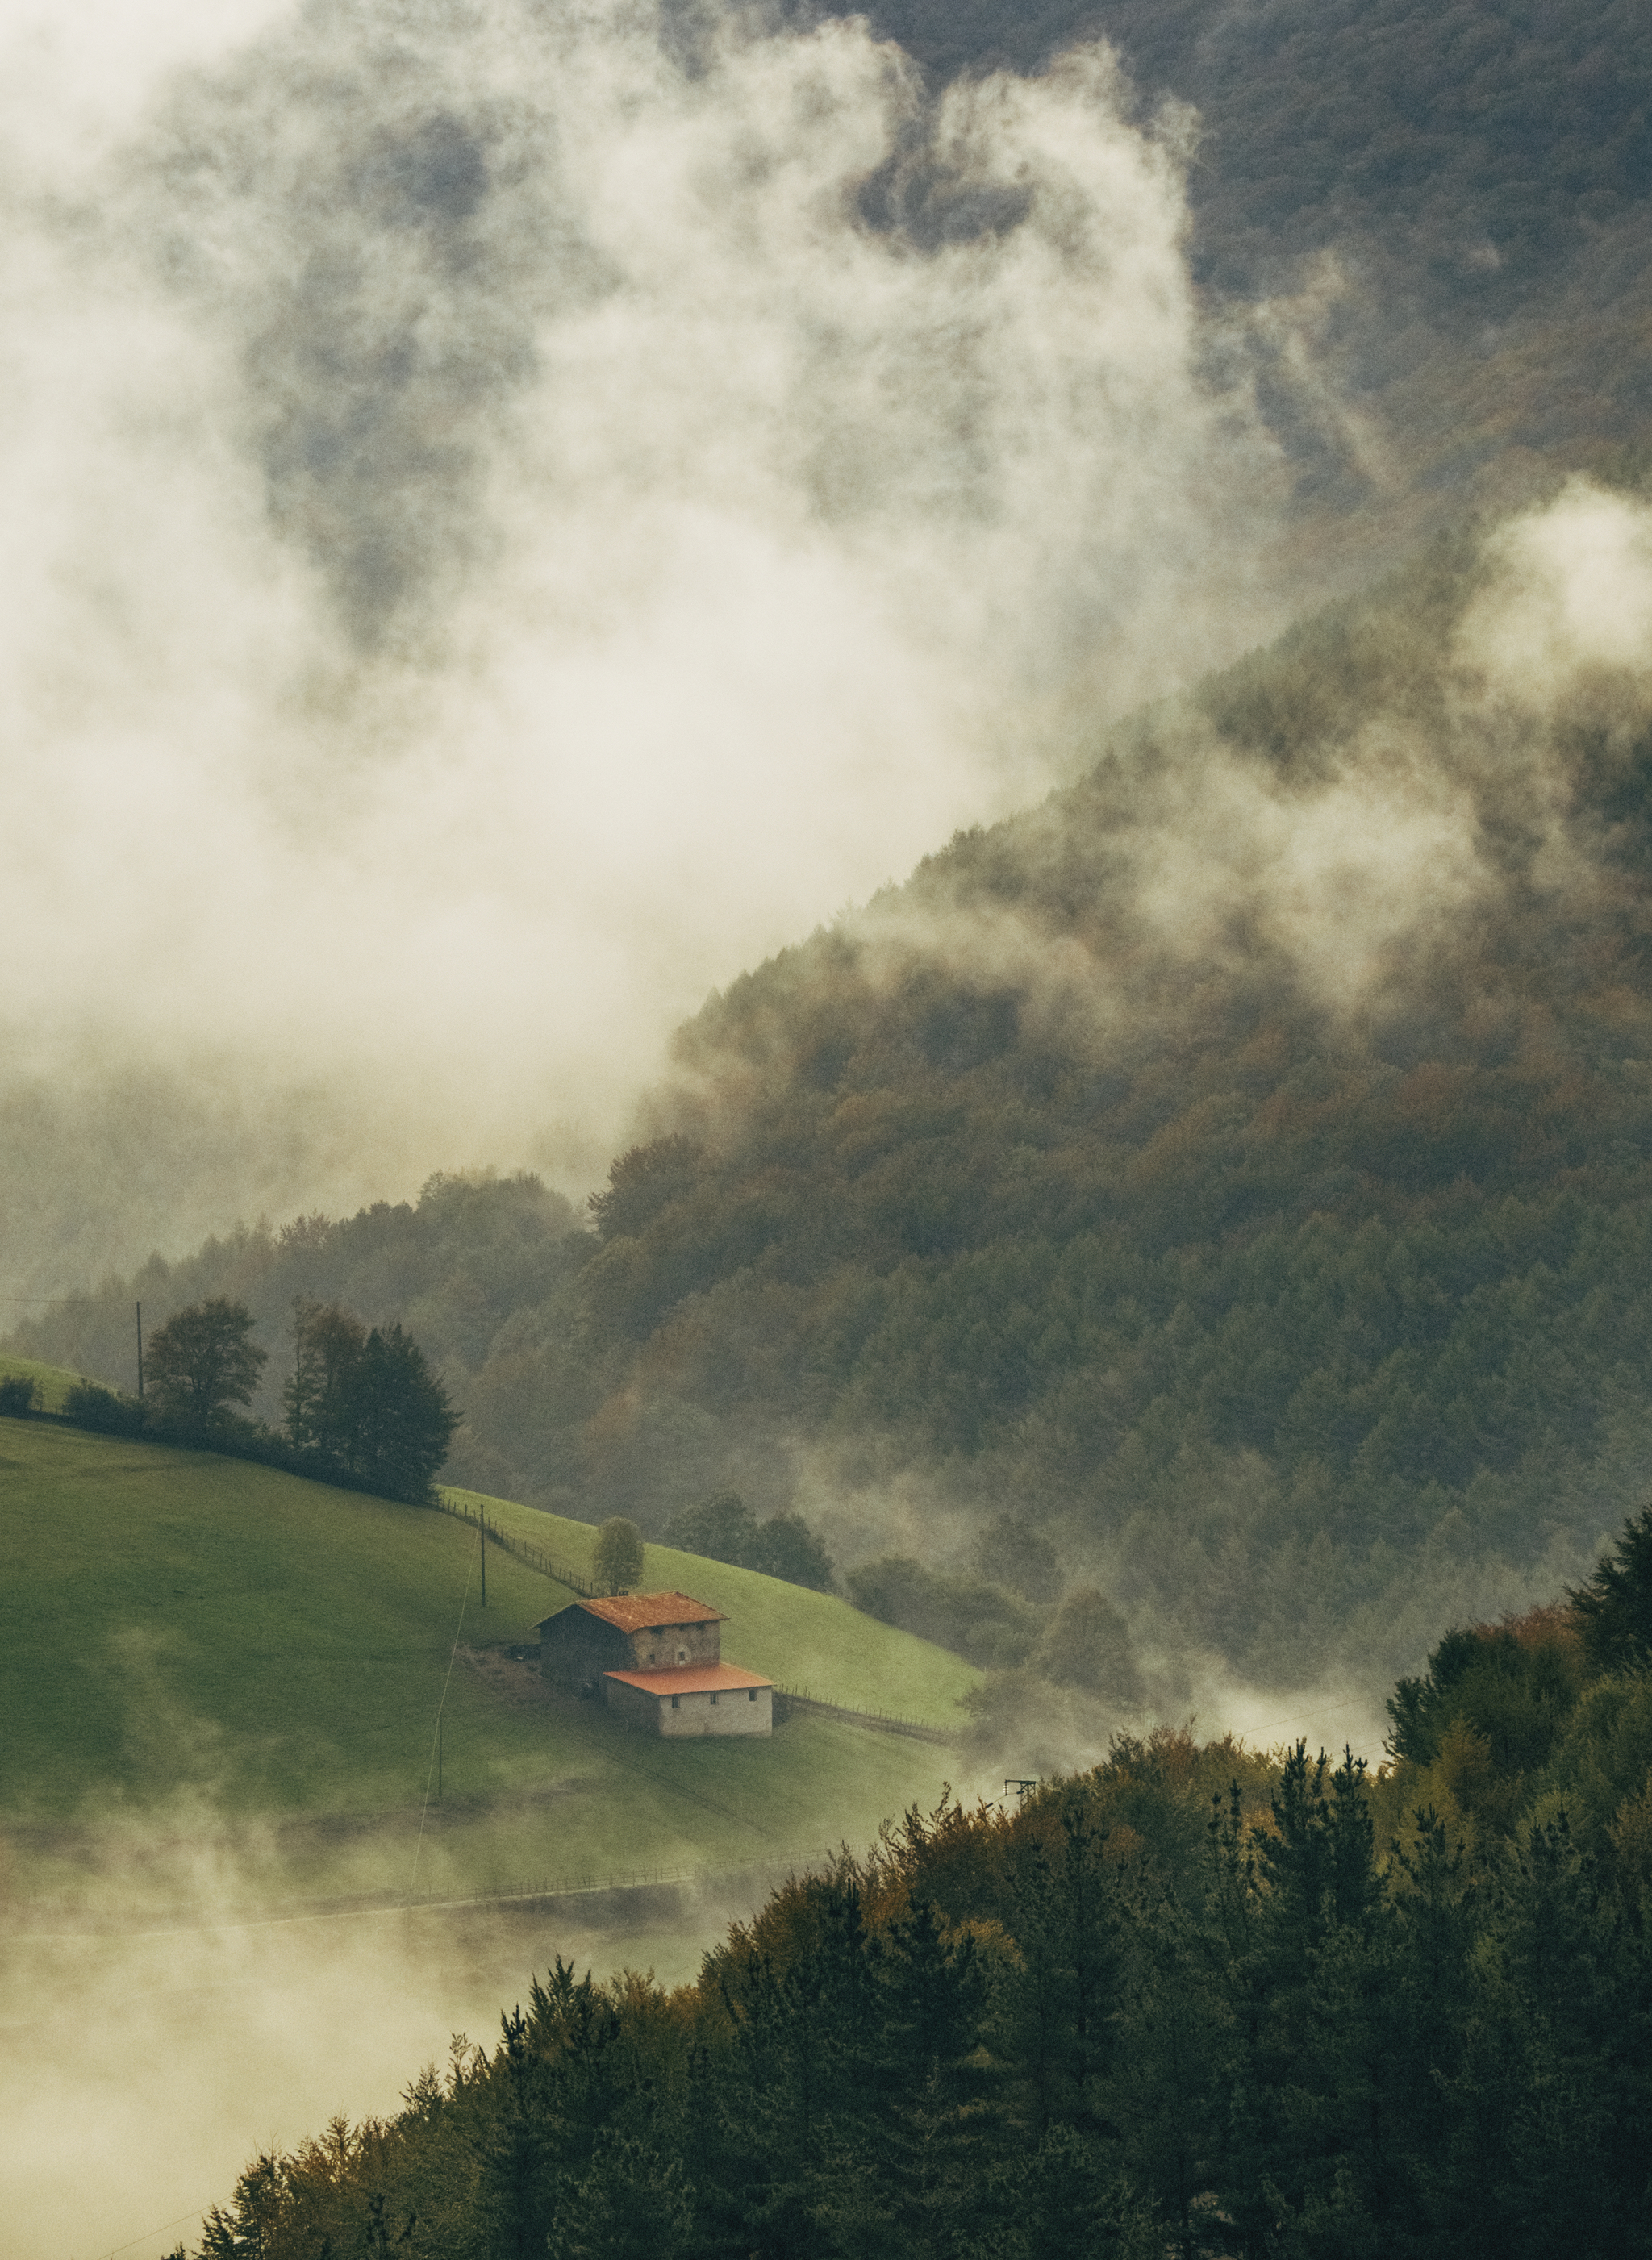 Paisajes del noroeste de Navarra. La niebla entra desde la montaña y cubre el caserío.